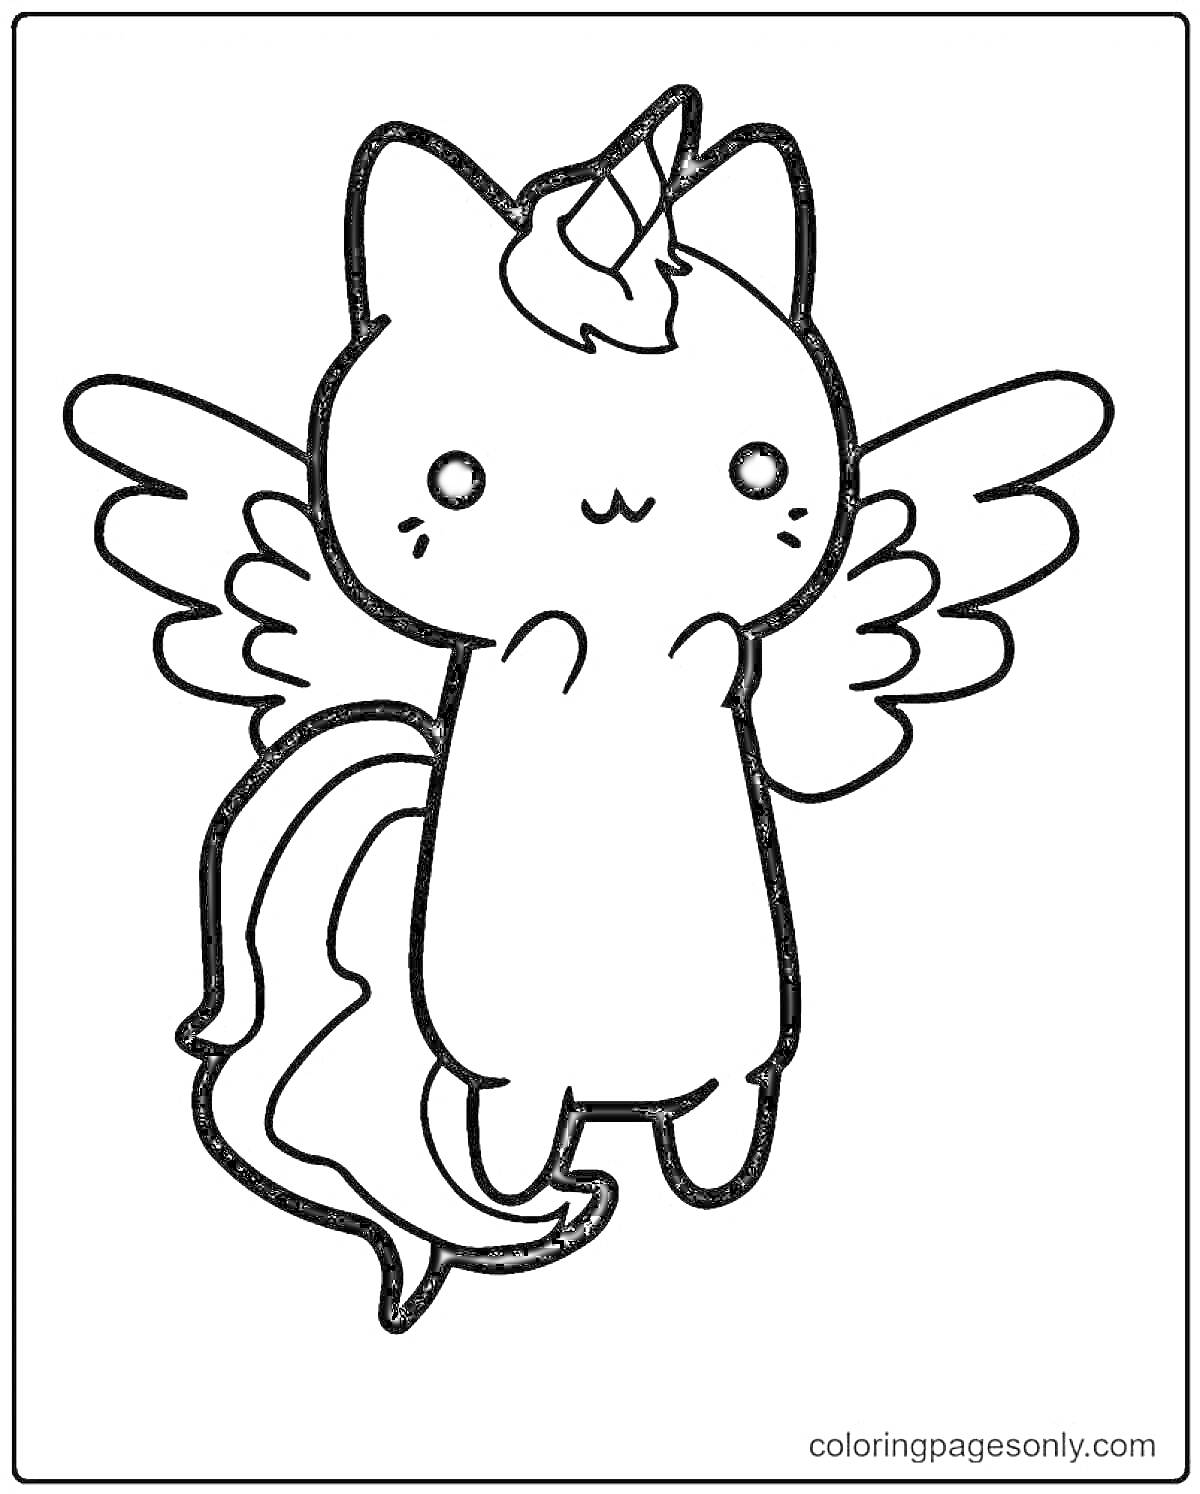 Раскраска Кот-единорог с крыльями и рогом на голове, стоящий на задних лапах